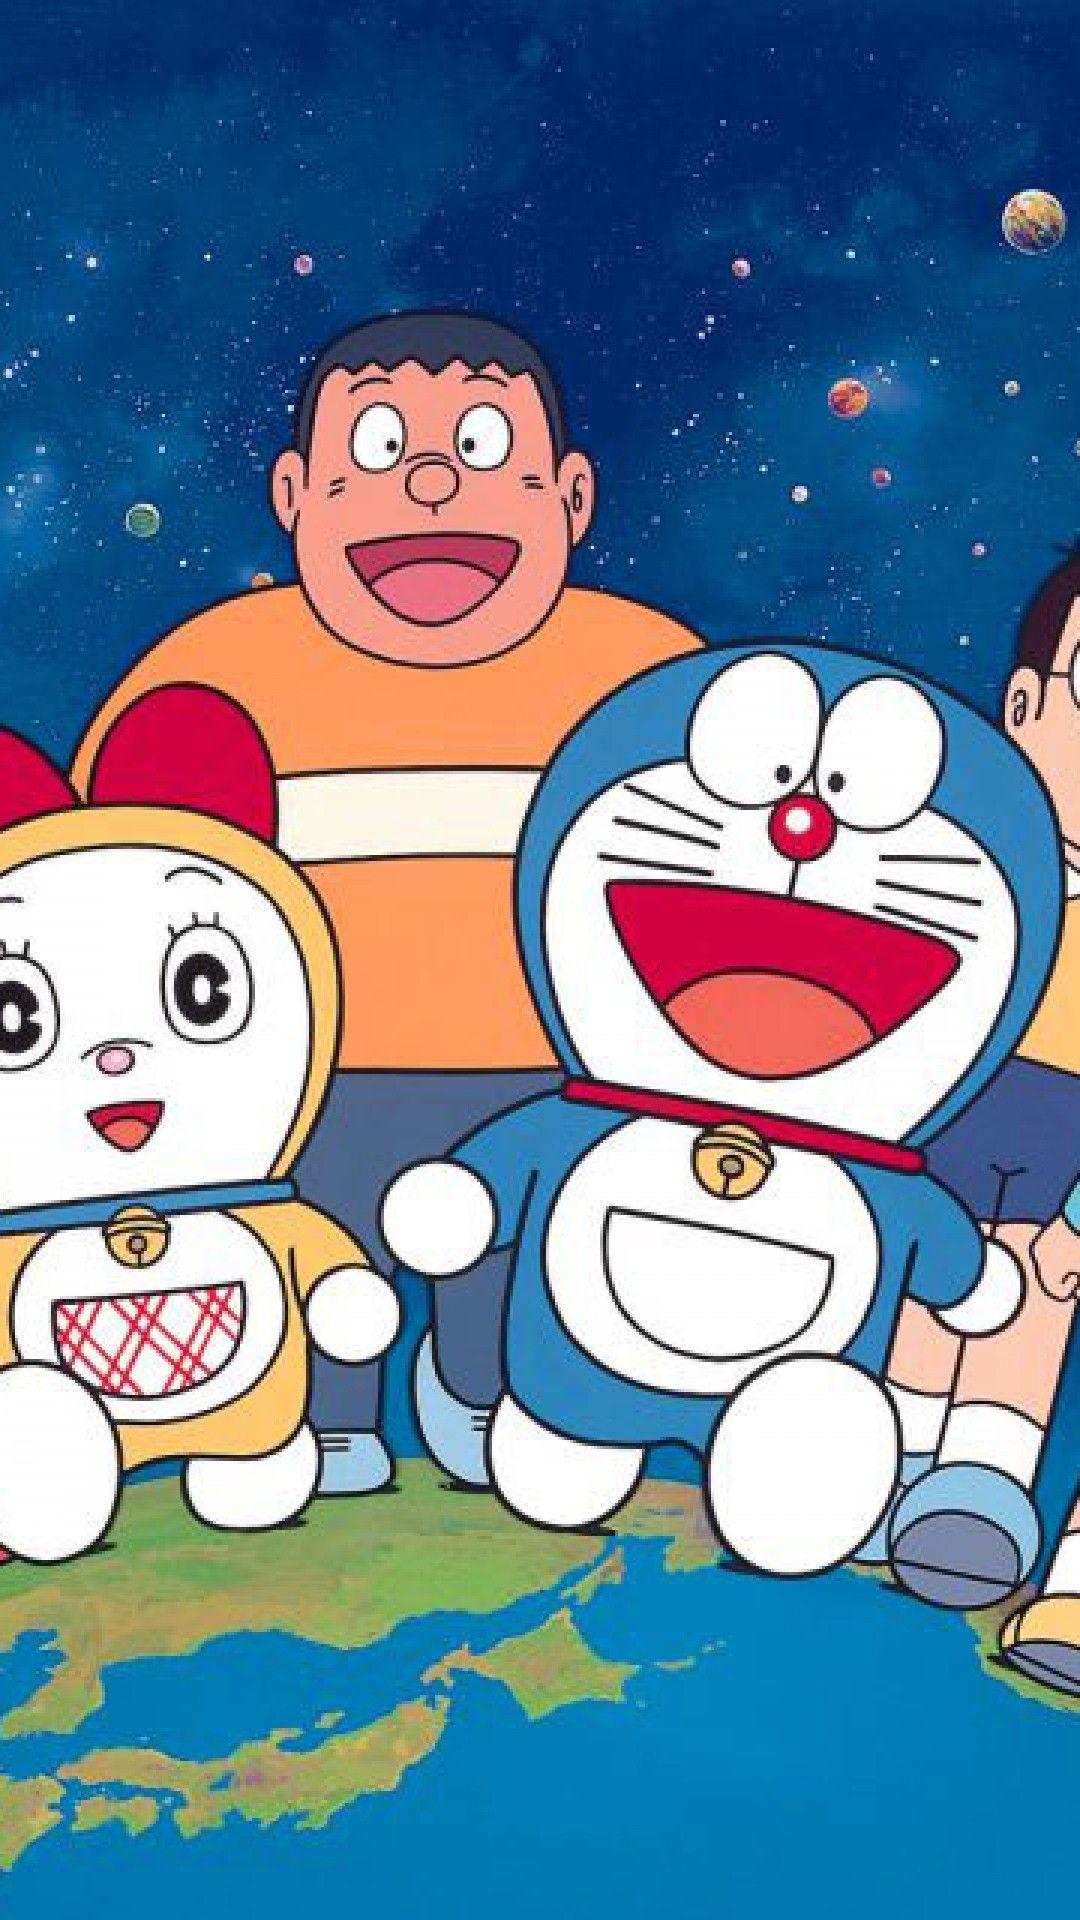 Doraemon 3D Wallpapers - Top Free Doraemon 3D Backgrounds ...